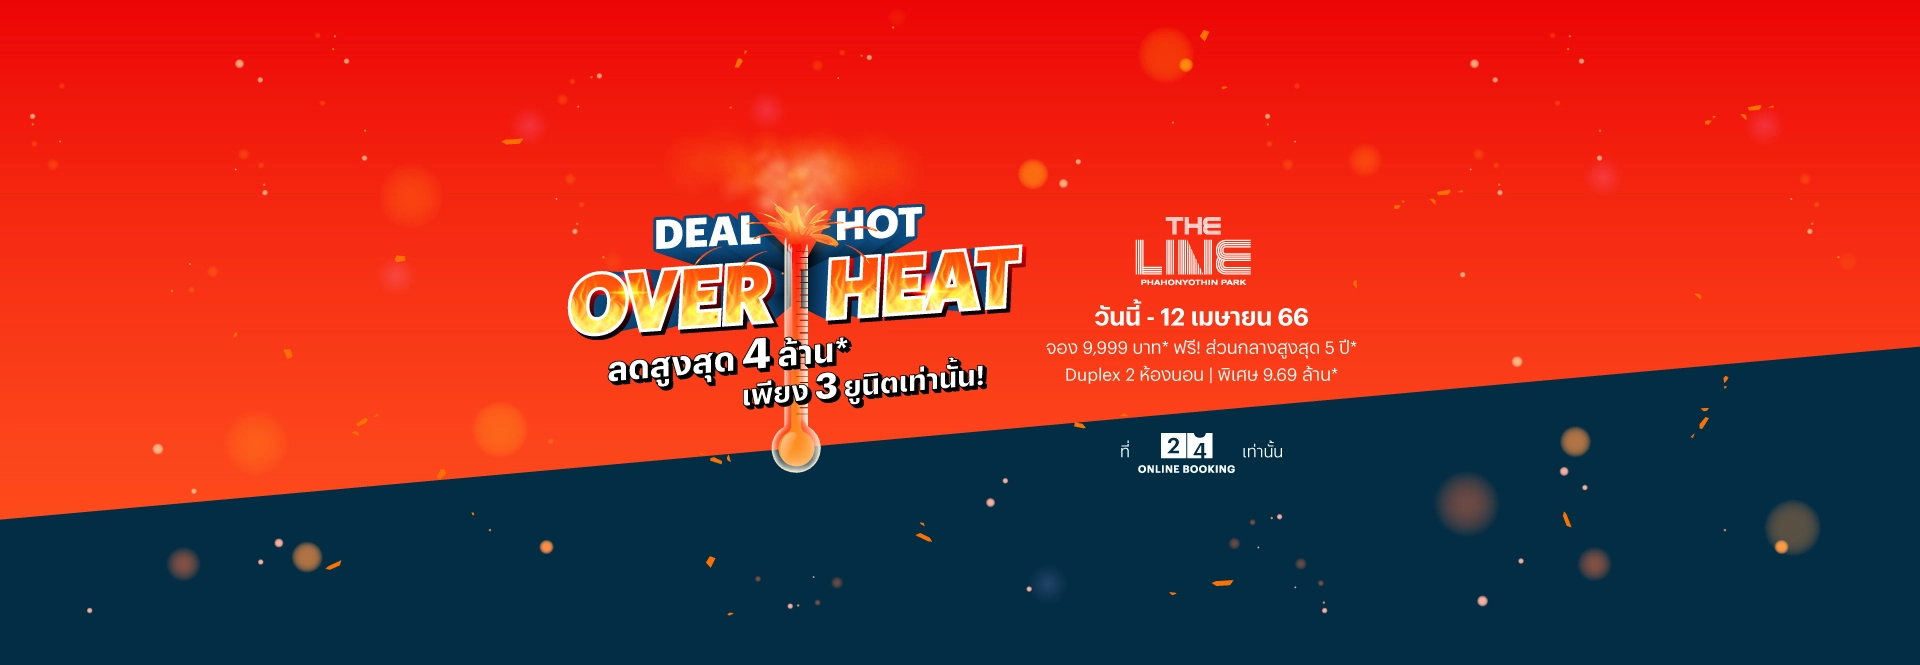 Deal Hot Overheat